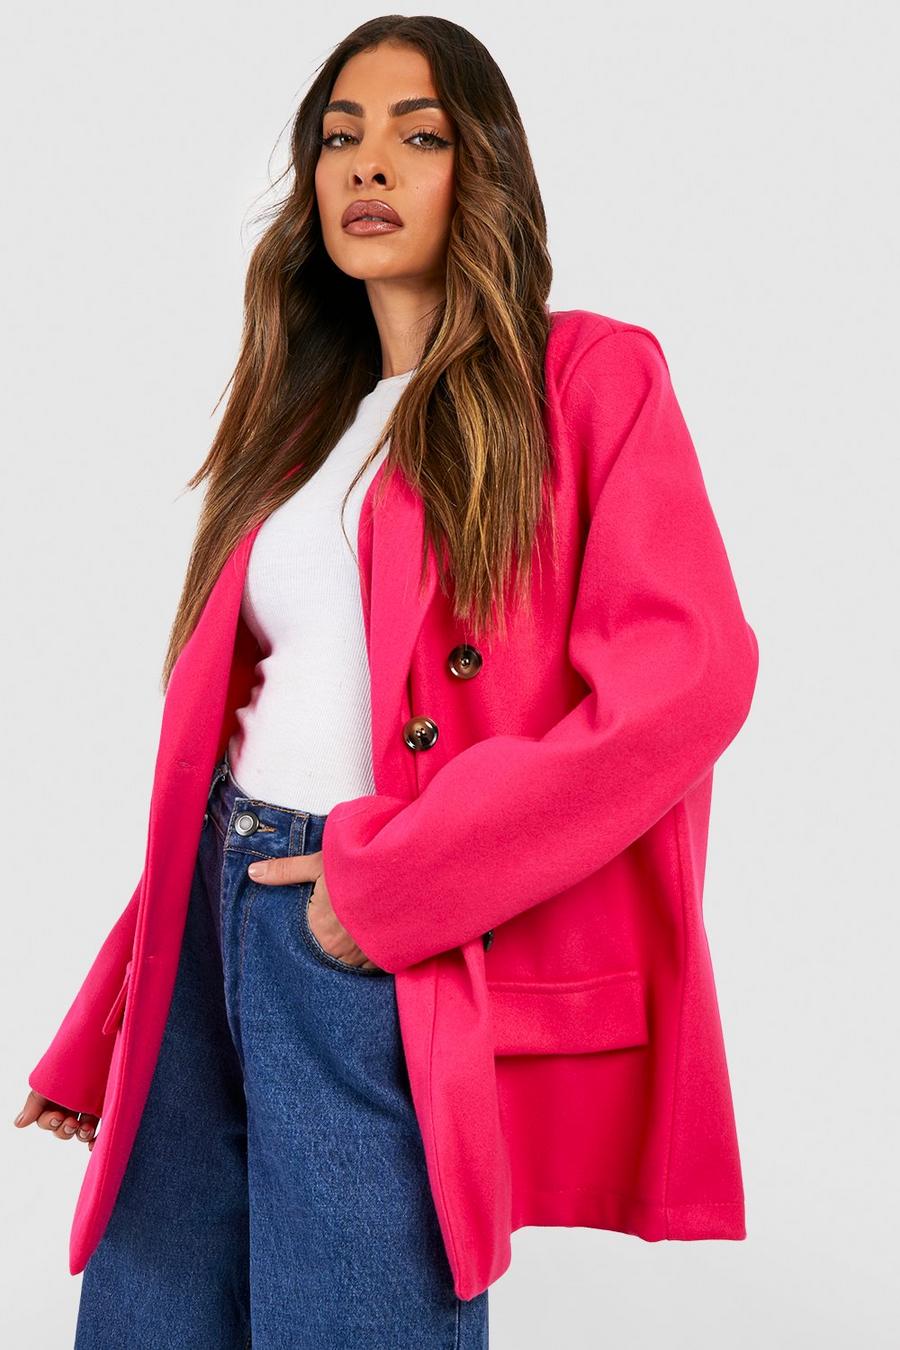 Kurzer zweireihiger Oversize Mantel in Wolloptik, Hot pink